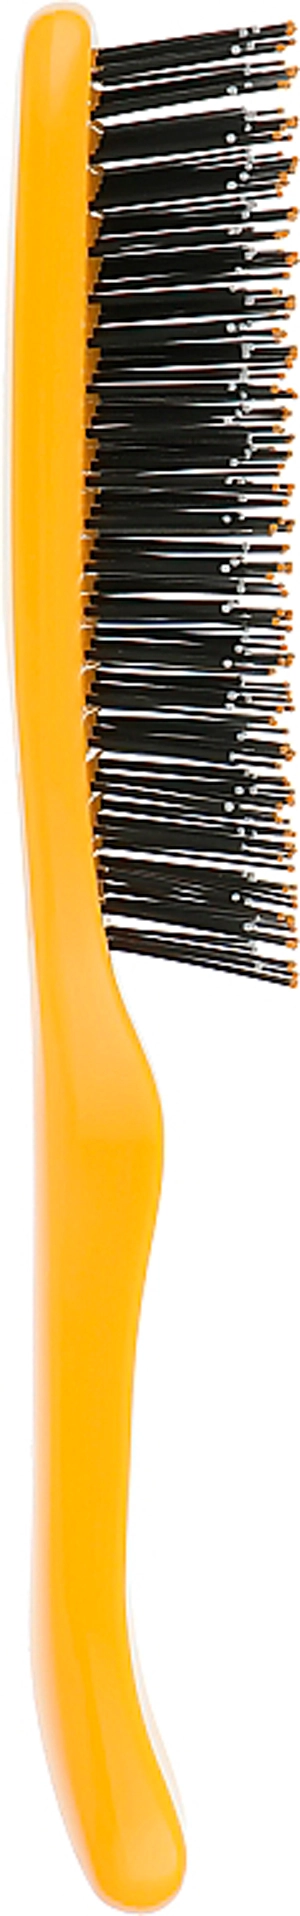 Расческа для волос - I LOVE MY HAIR Spider S, желтая, глянцевая - фото N2